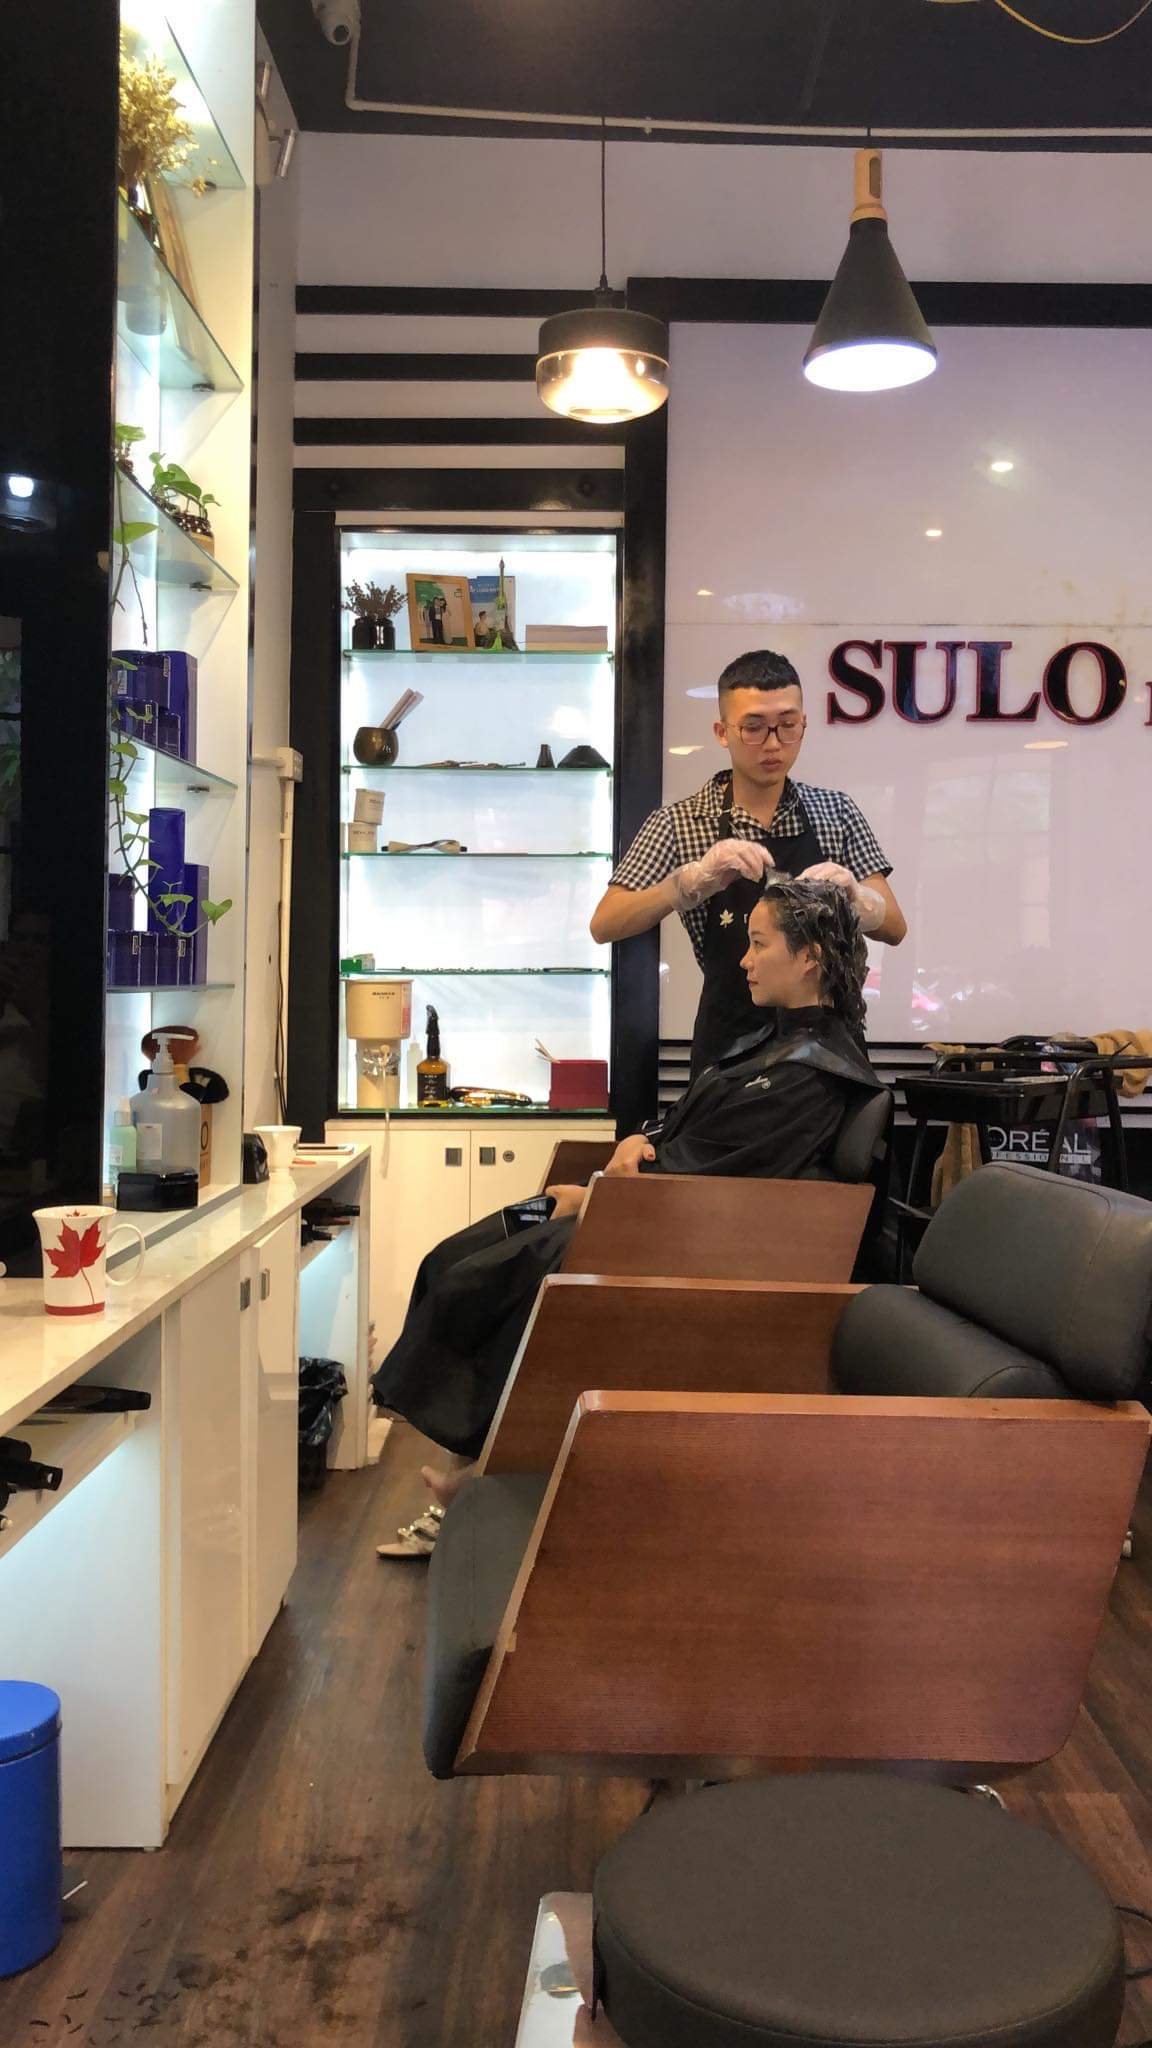 Top 6 Salon cắt tóc nam đẹp nhất Hà Nội